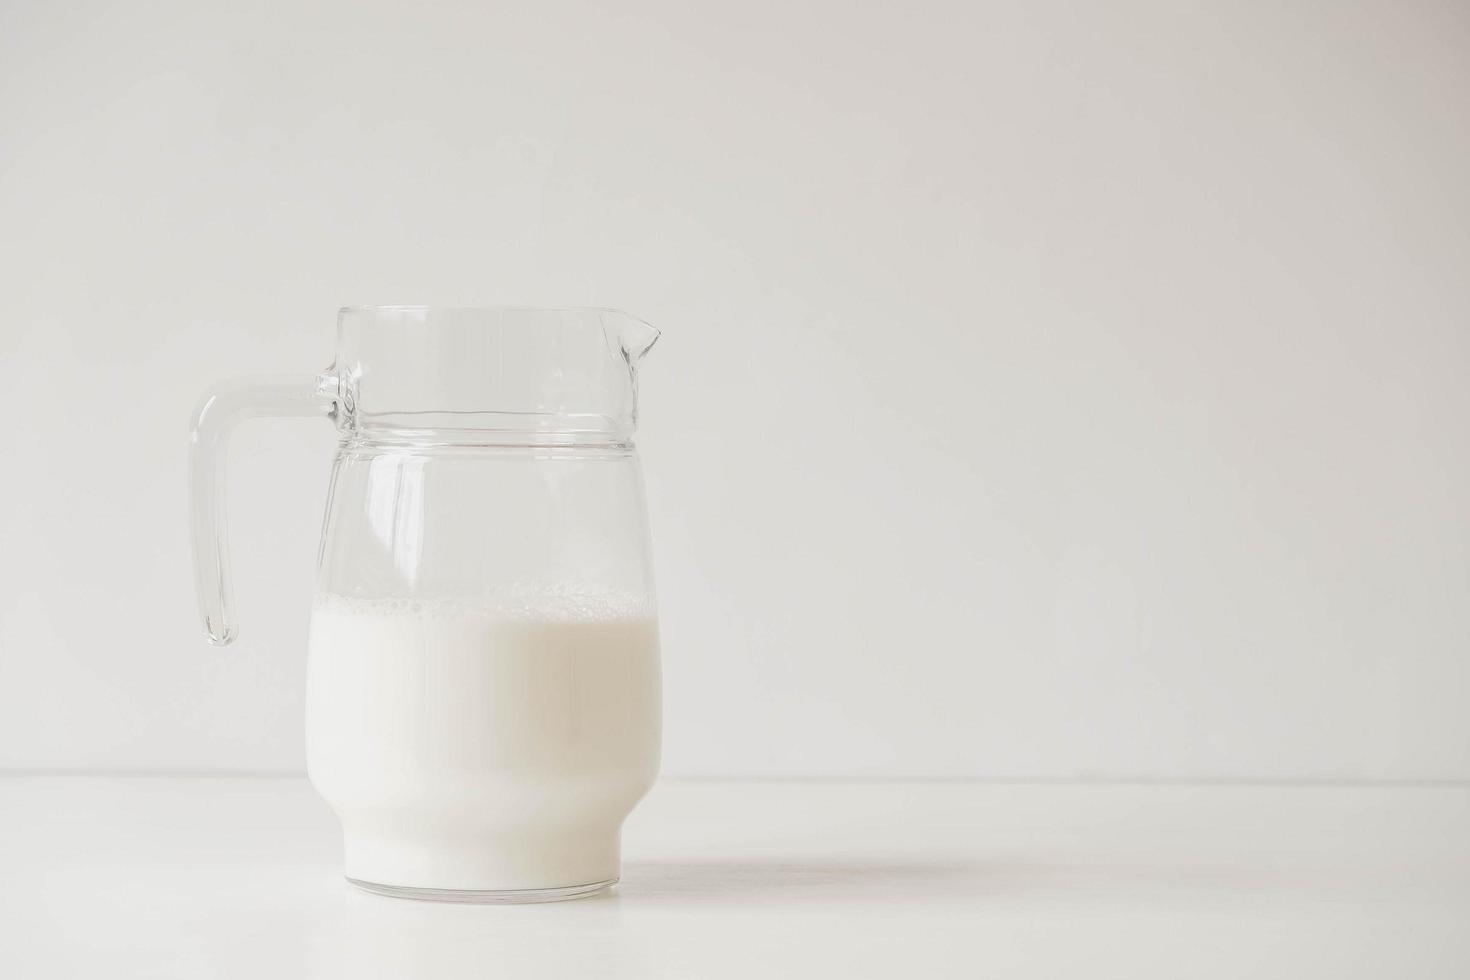 jarro de vidro com leite em uma mesa branca foto